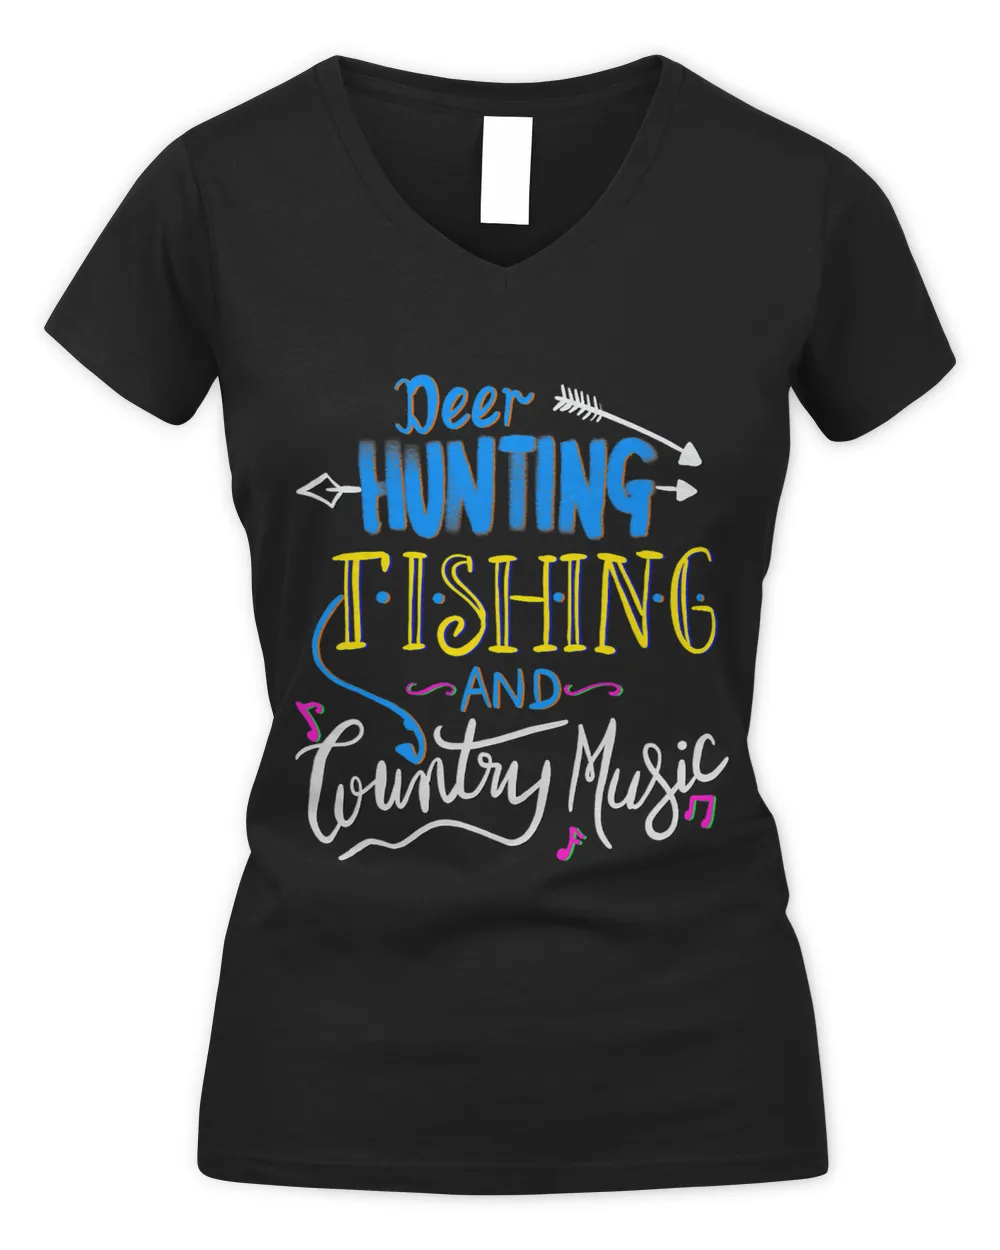 LongshanksTees Deer Hunting Fishing Country Music